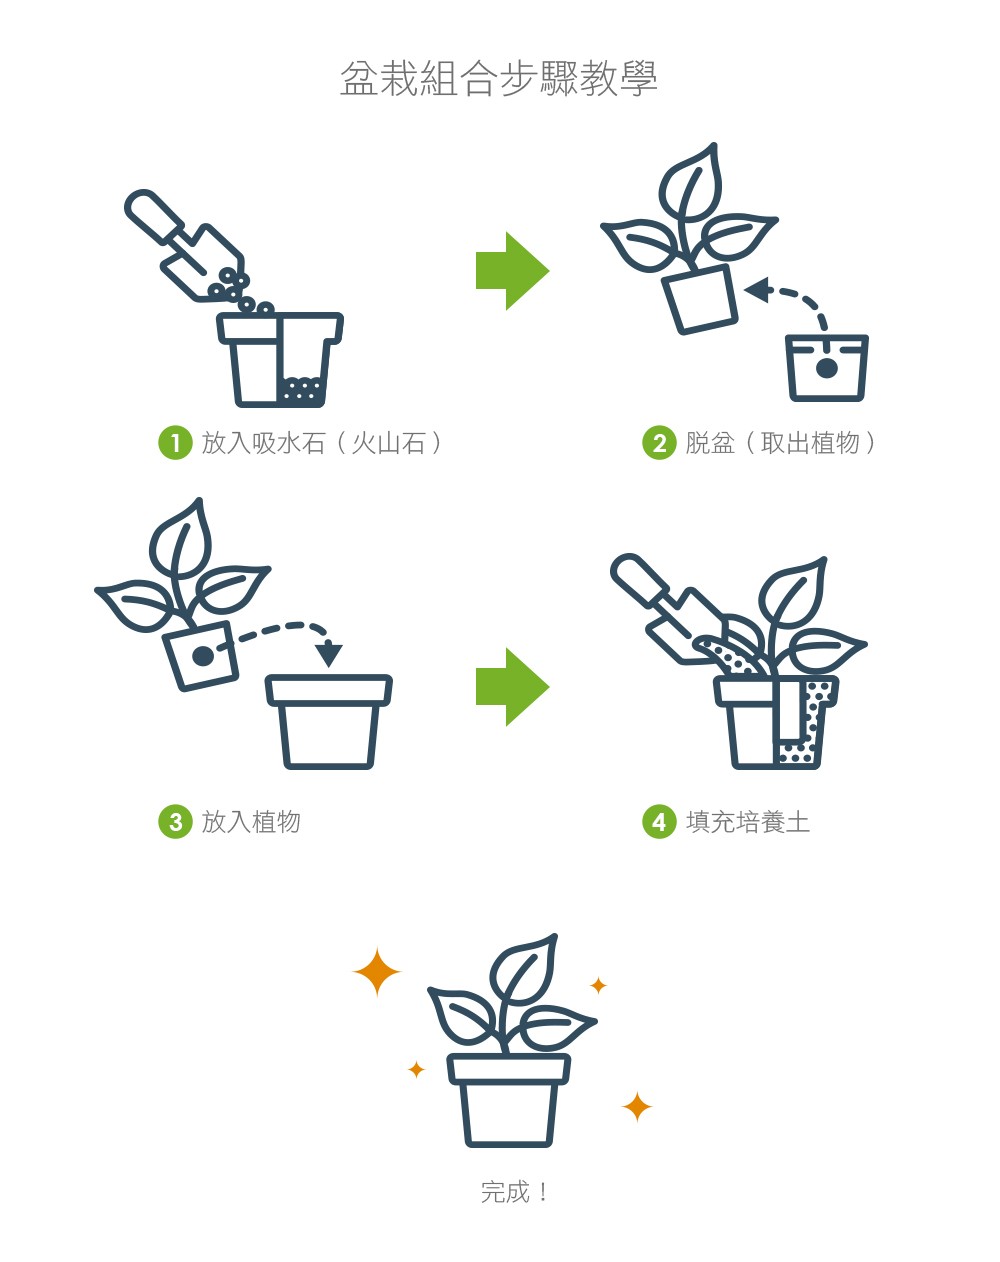 2Ustyle 風格圖悠 盆栽 植物 花器 組合盆栽步驟教學